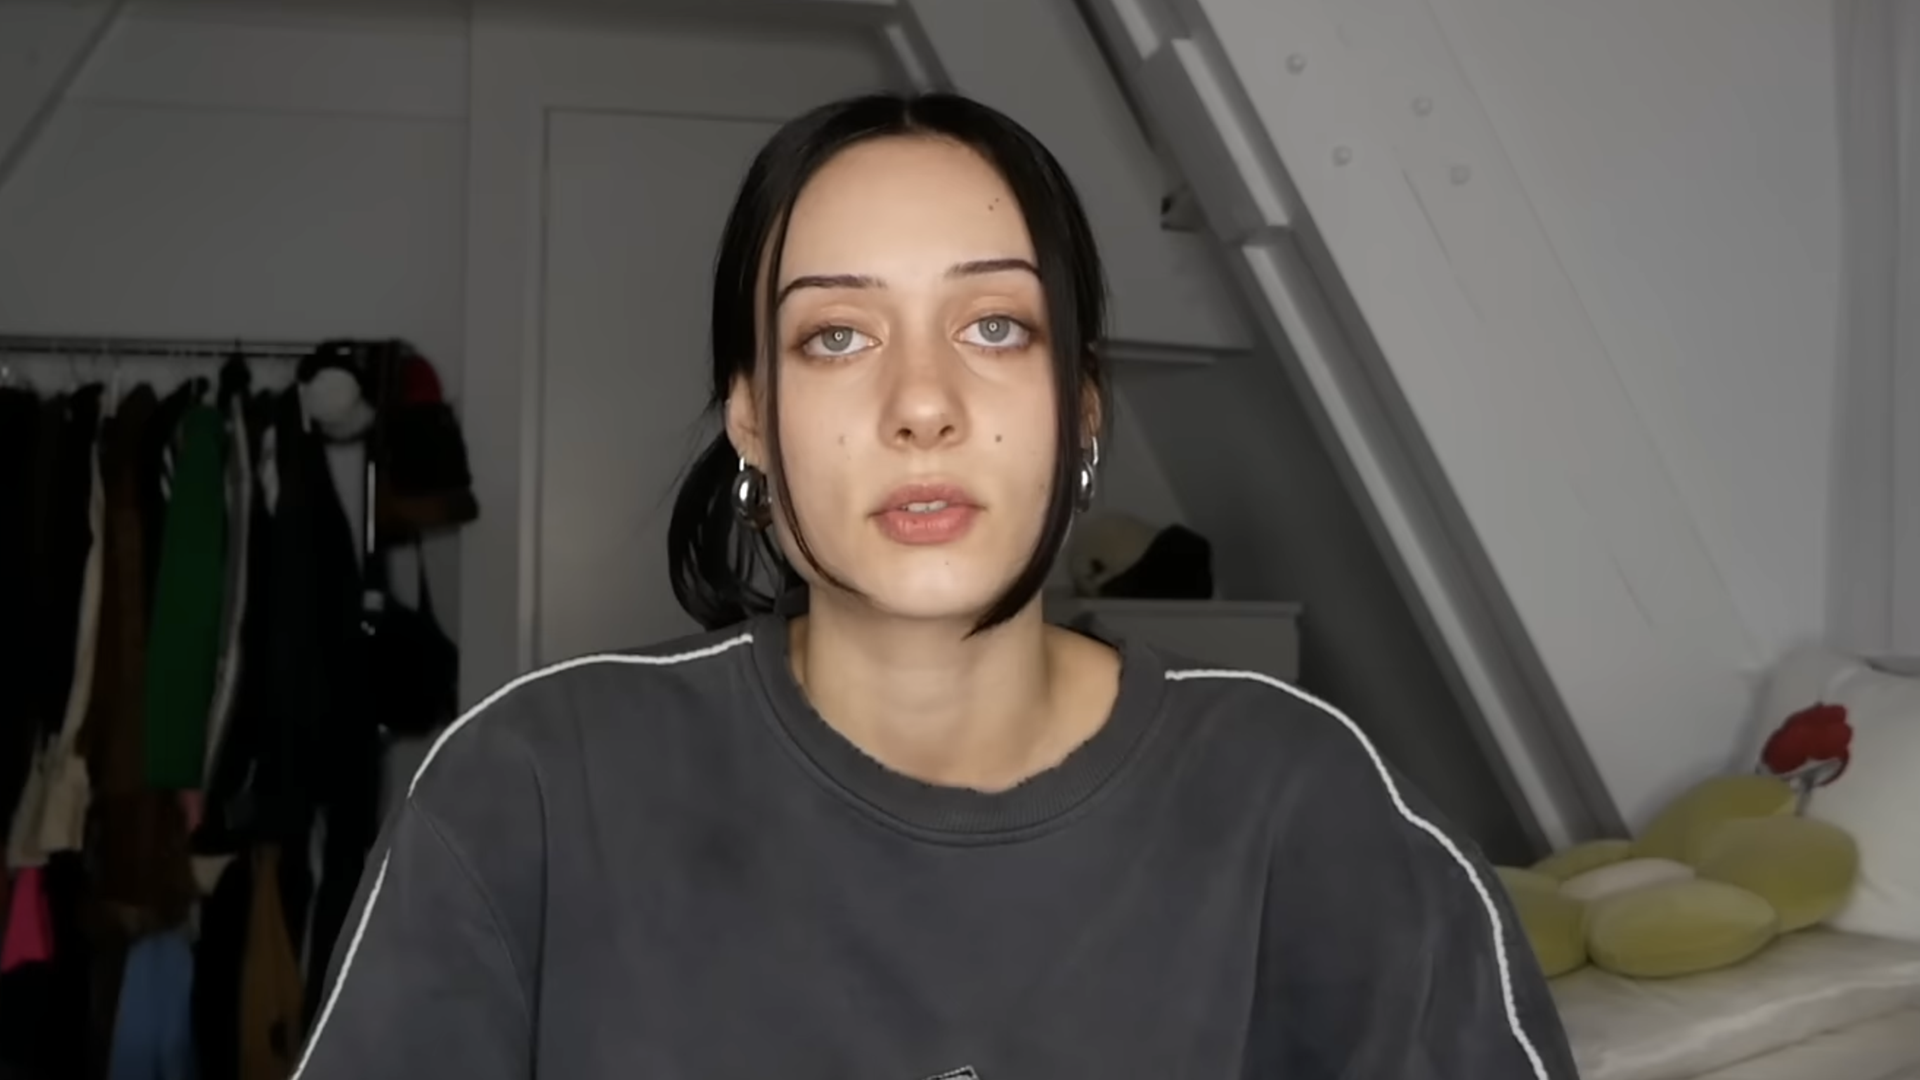 Die YouTuberin Kayla Shyx sitzt in einem Zimmer und spricht frontal in die Kamera. Sie trägt einen grauen Pulli.